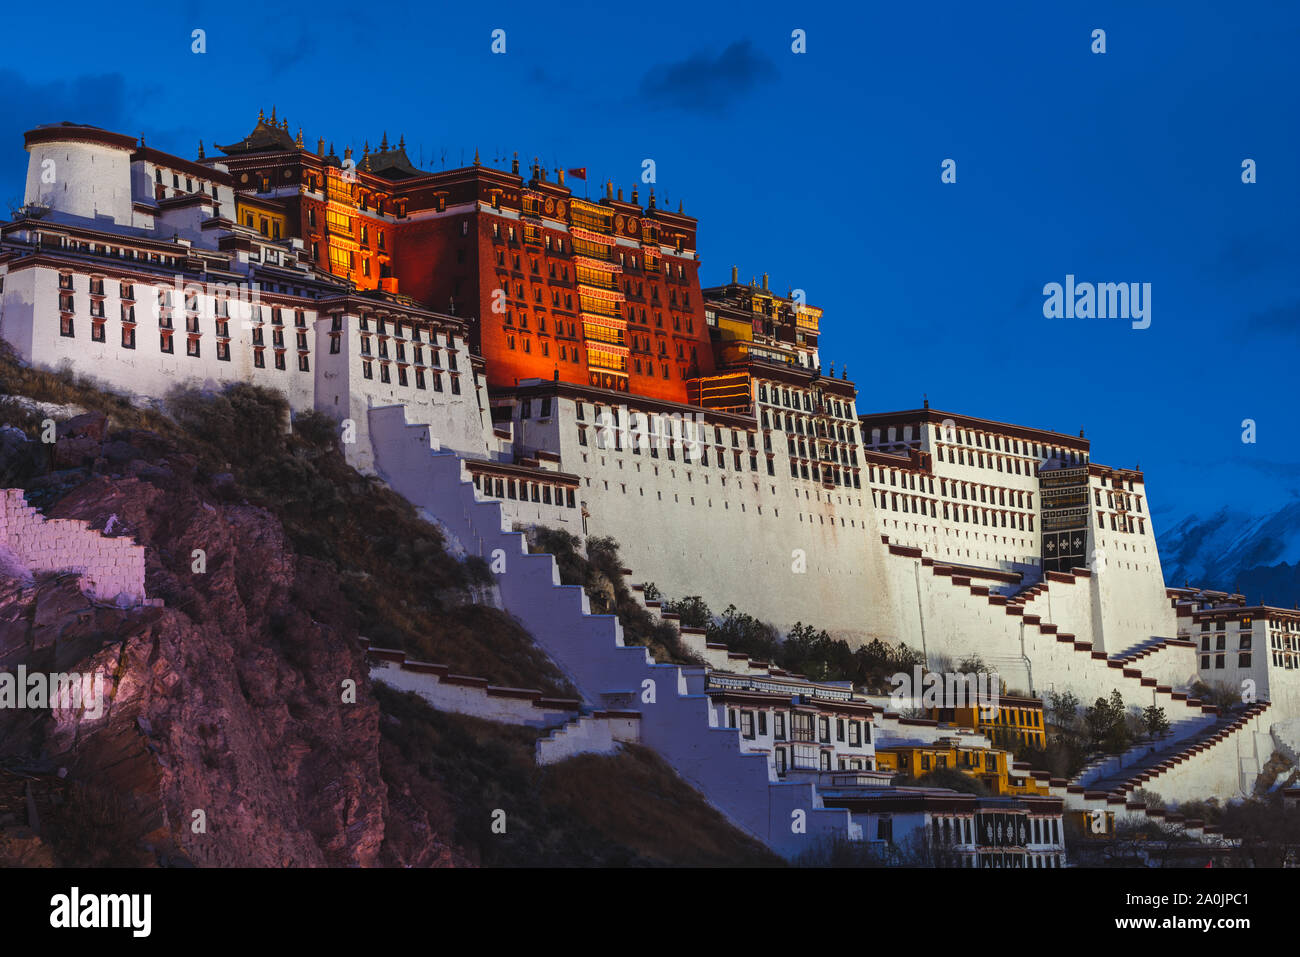 Palais du Potala à Lhassa, Tibet, illuminé comme soirée approche. Palais du Potala est le siège du dalaï-lama dans le Bouddhisme Tibétain. Banque D'Images